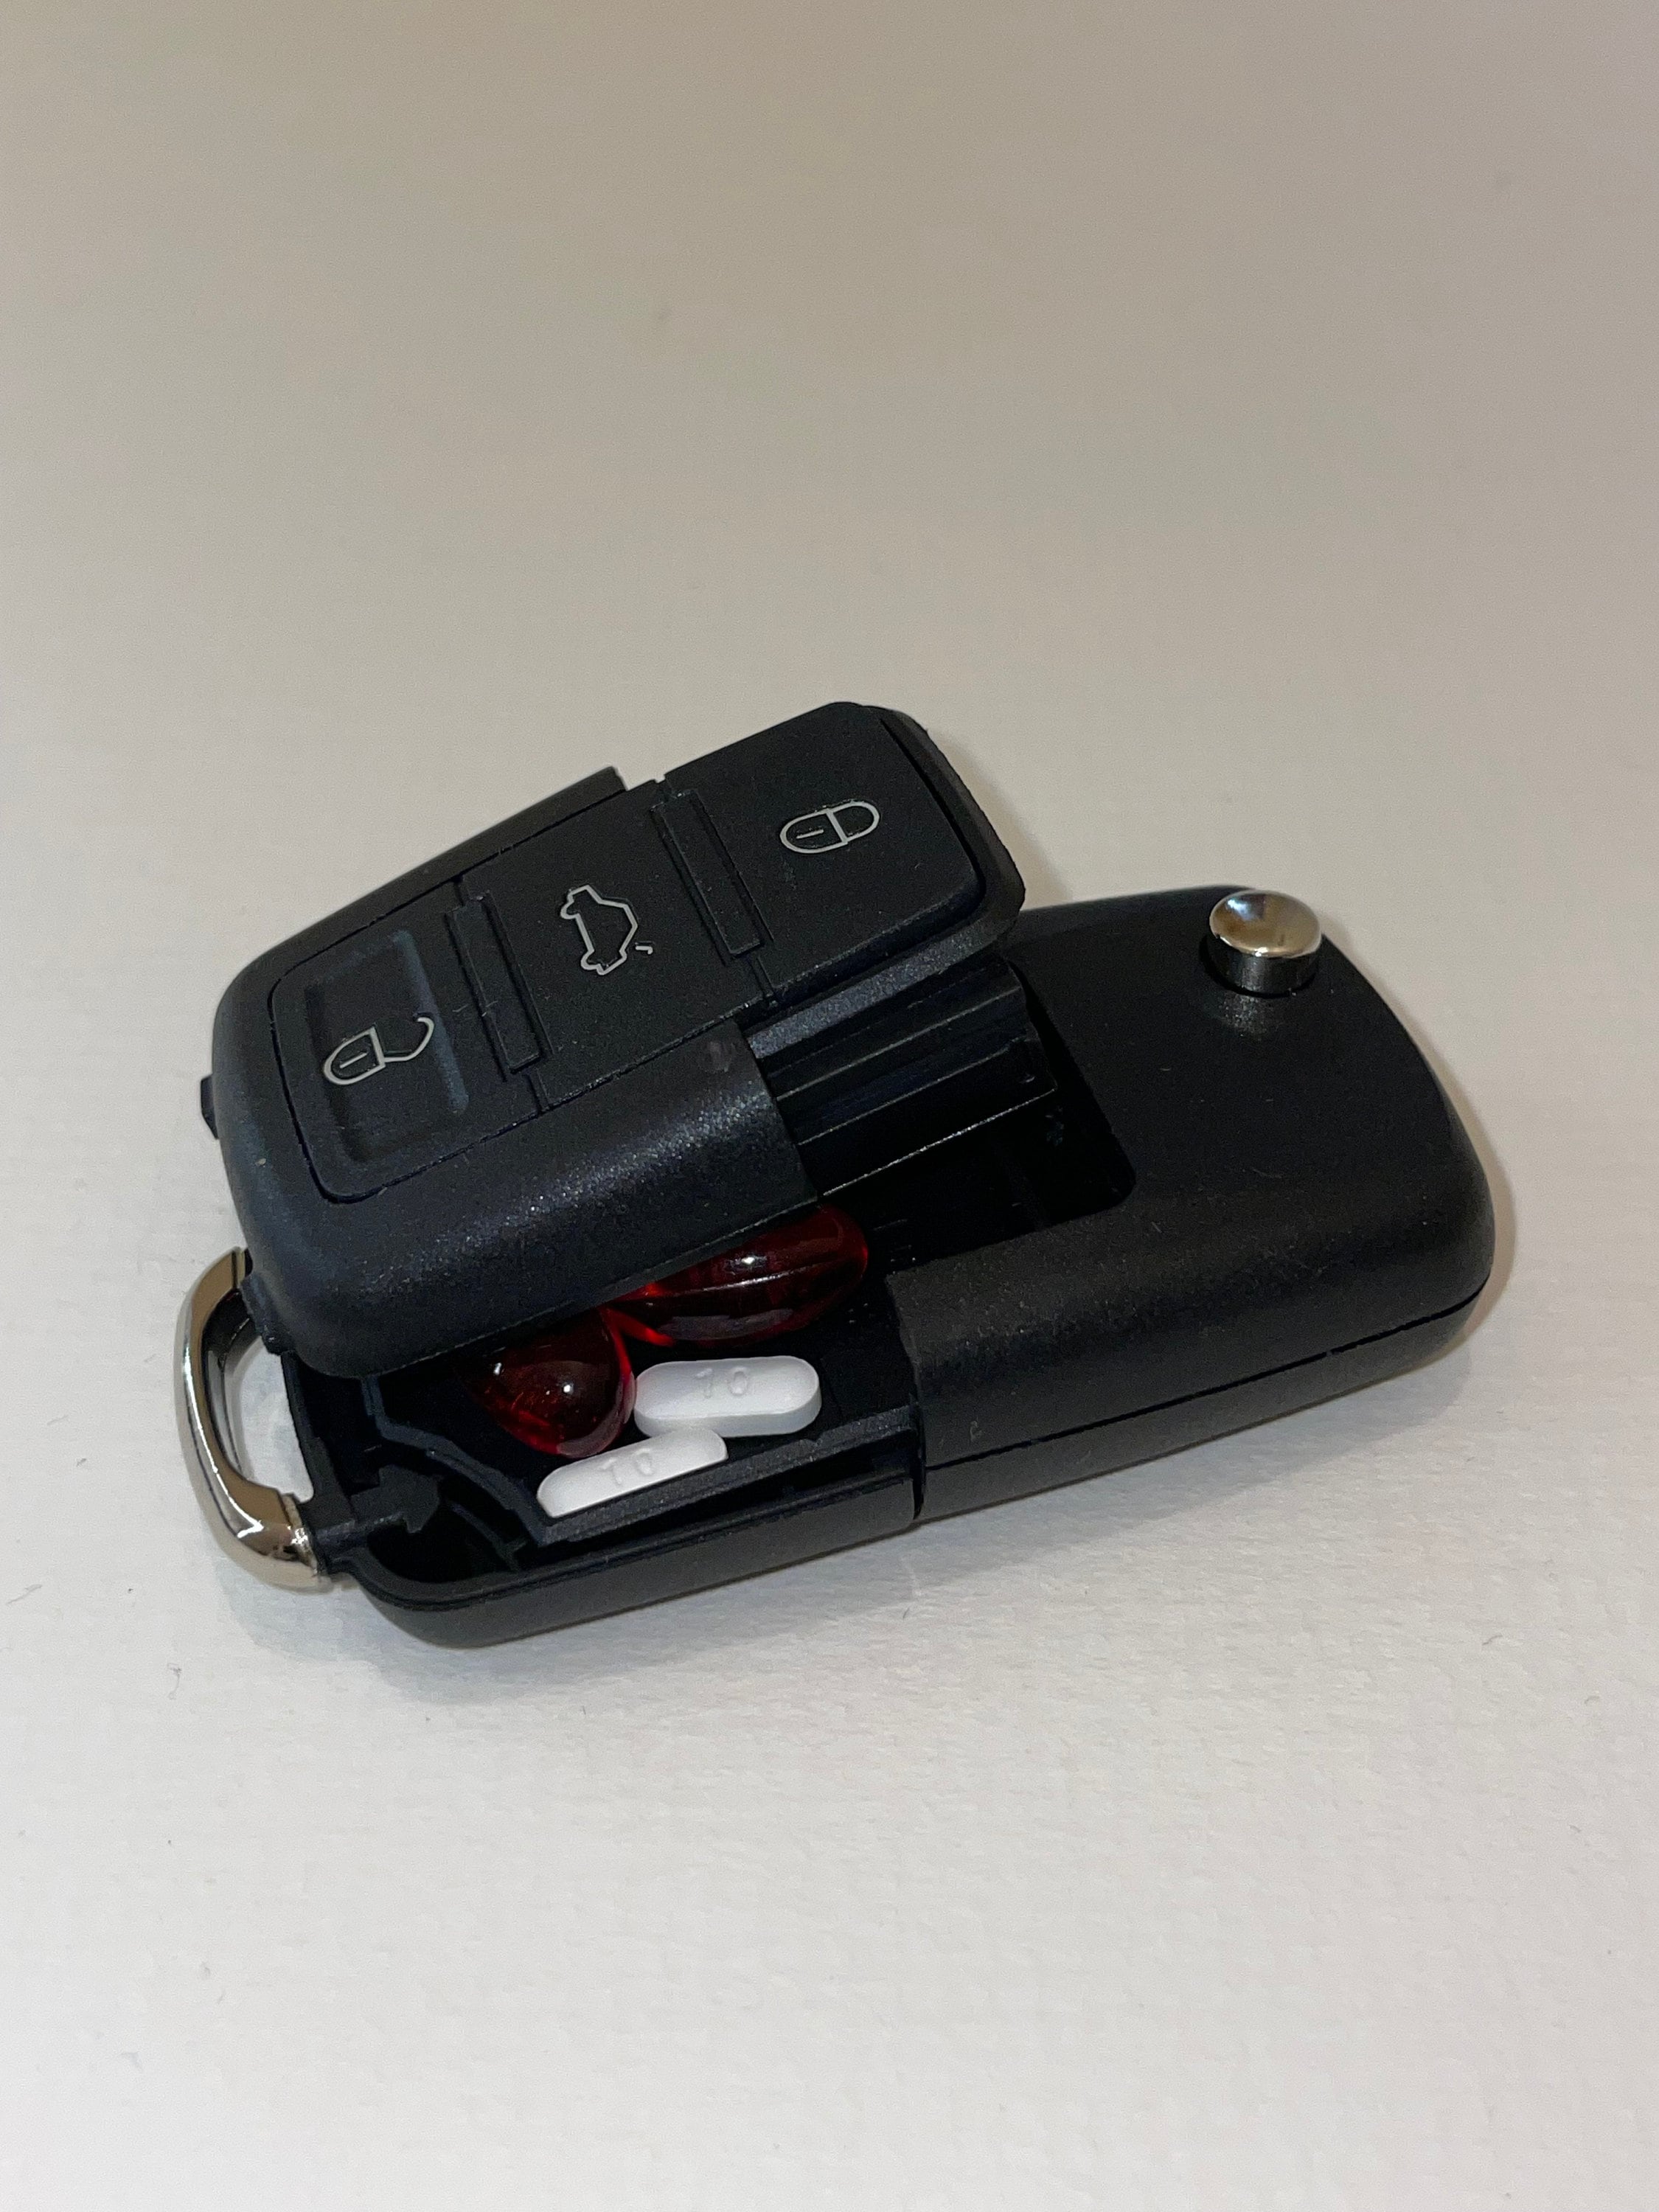 Auto Autoschlüssel Safe Geheimnis verstecktes Fach Stash Keyring